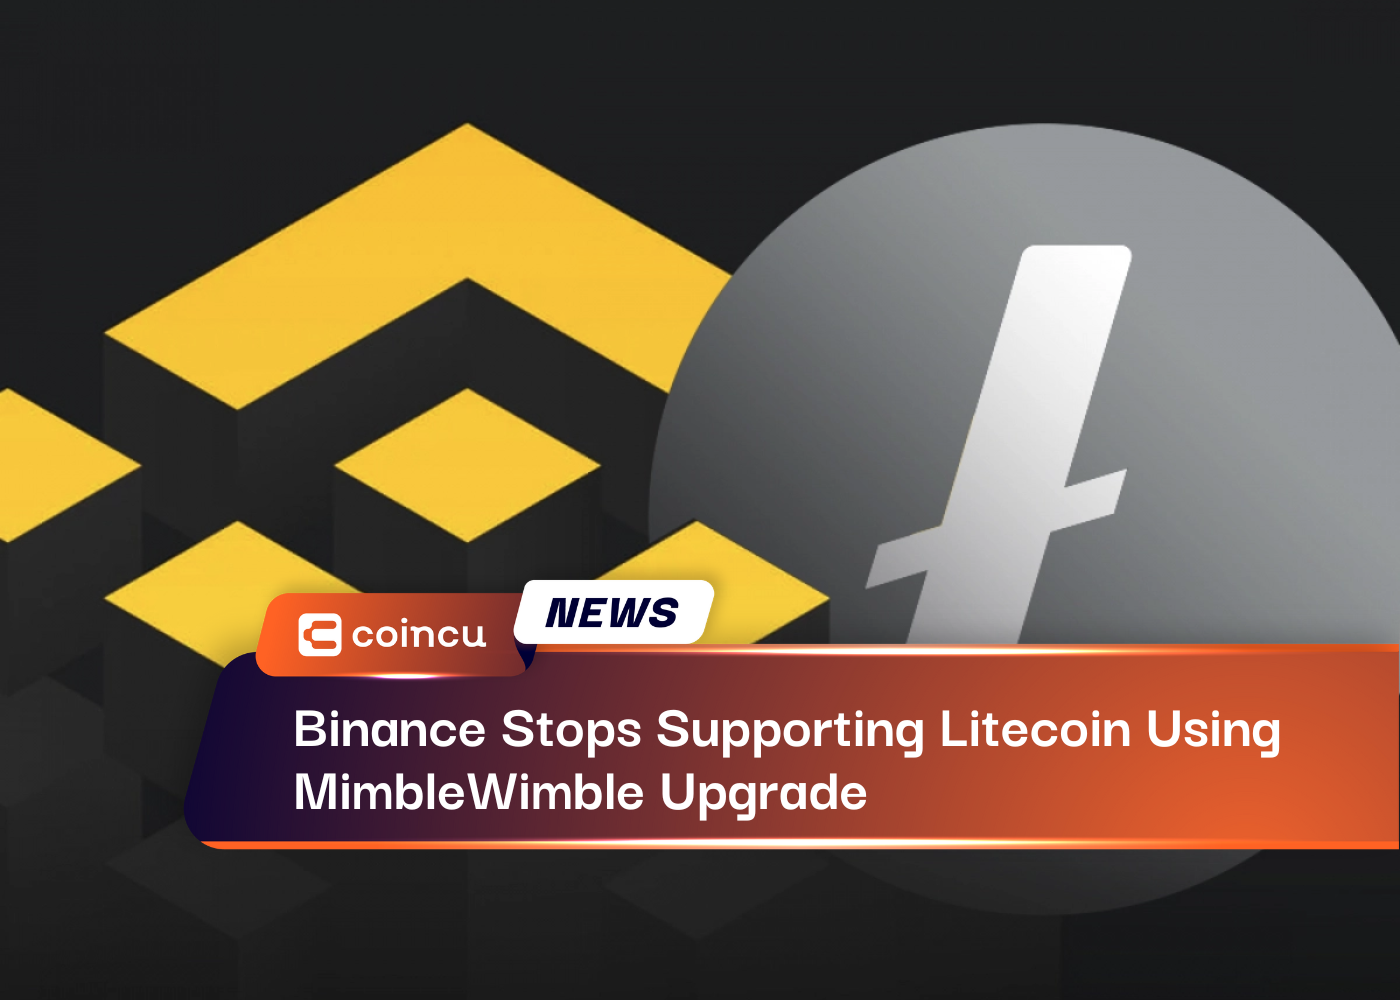 Binance ngừng hỗ trợ Litecoin bằng cách nâng cấp MimbleWimble